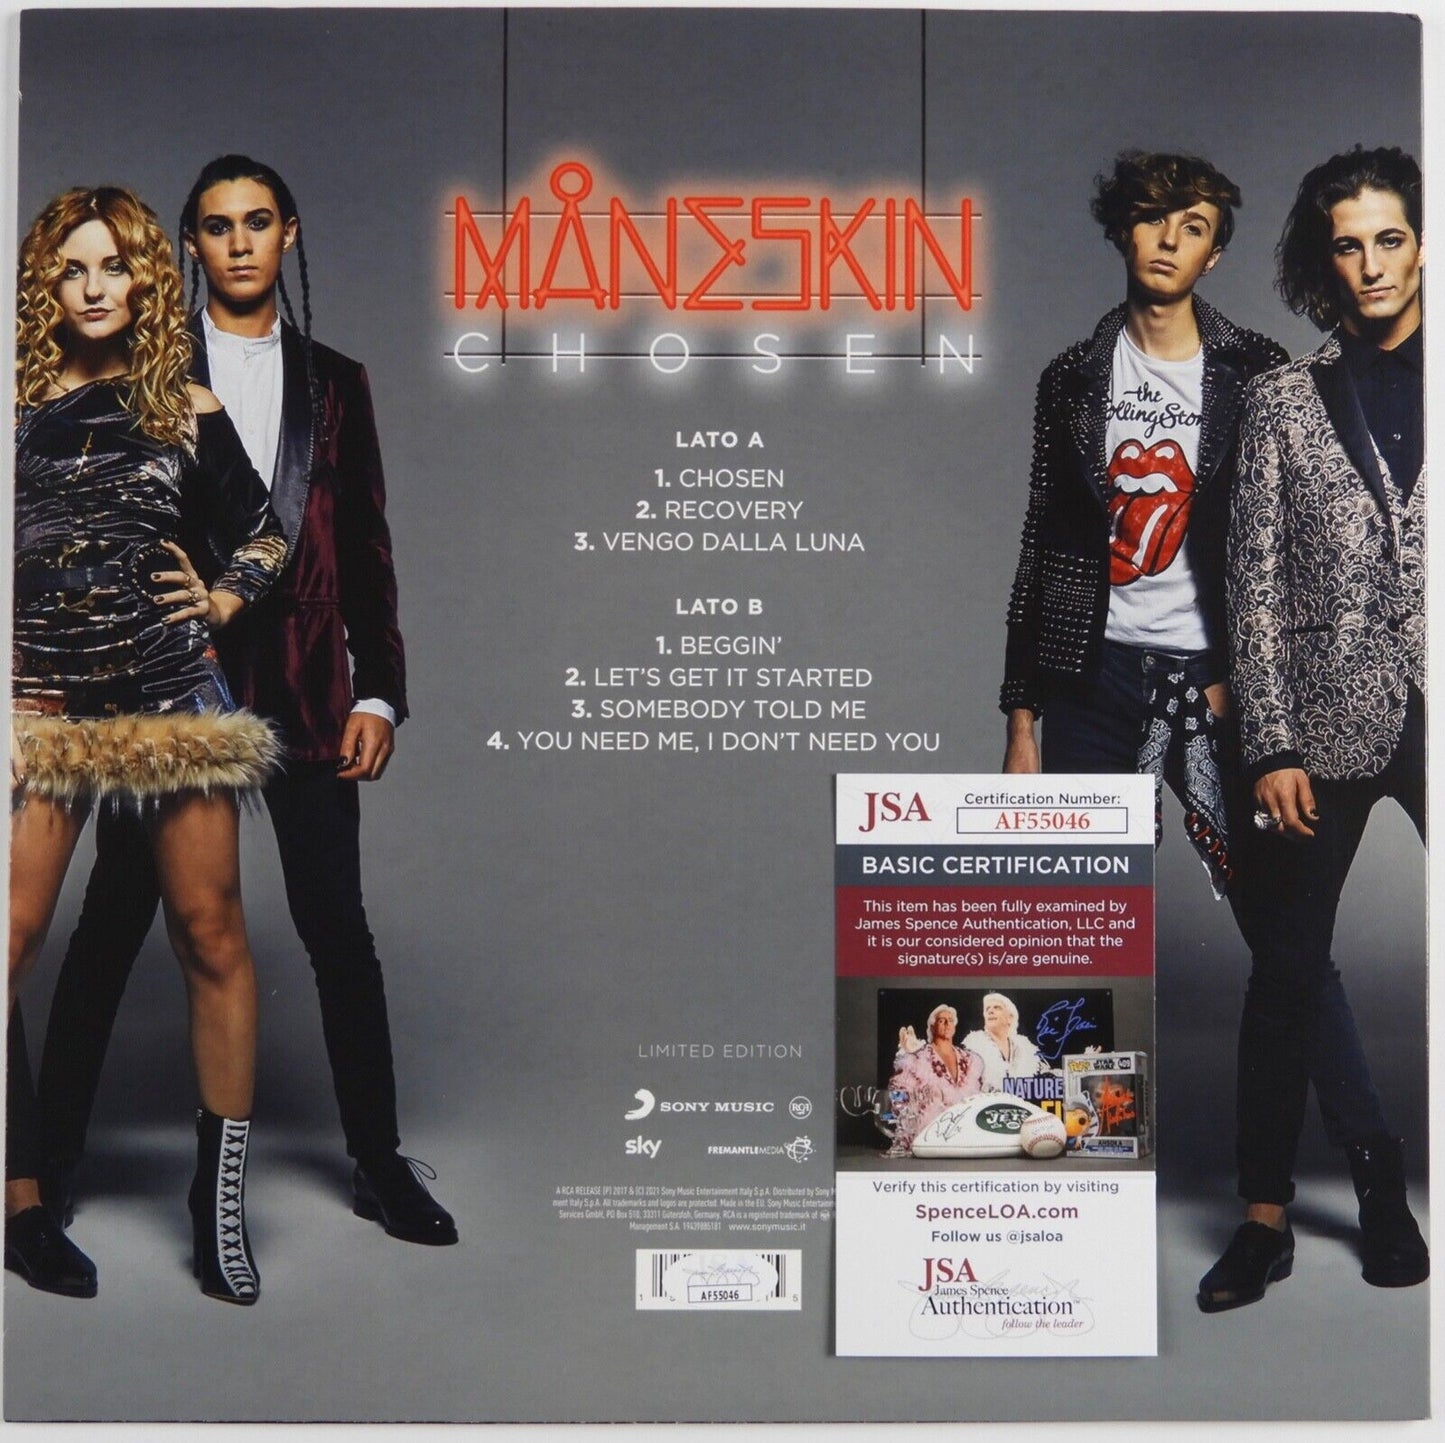 Maneskin FULL BAND Signed Autographed Il Ballo Della Vita Record Album LP 